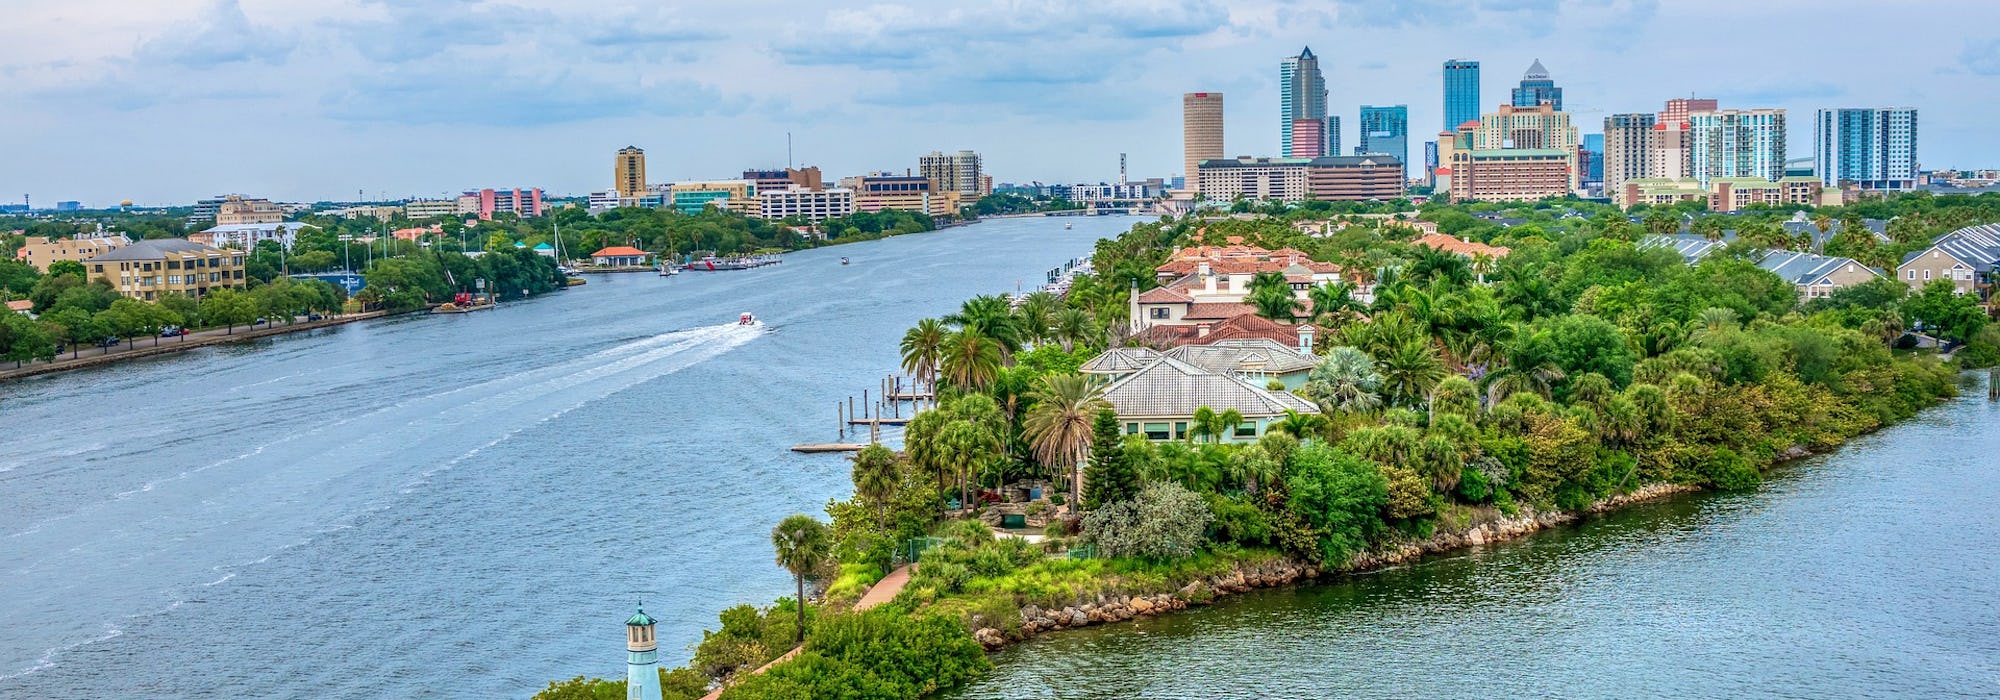 Bild på en halvö i Tampa med hus, palmer, vattnet och höghus i bakgrunden.